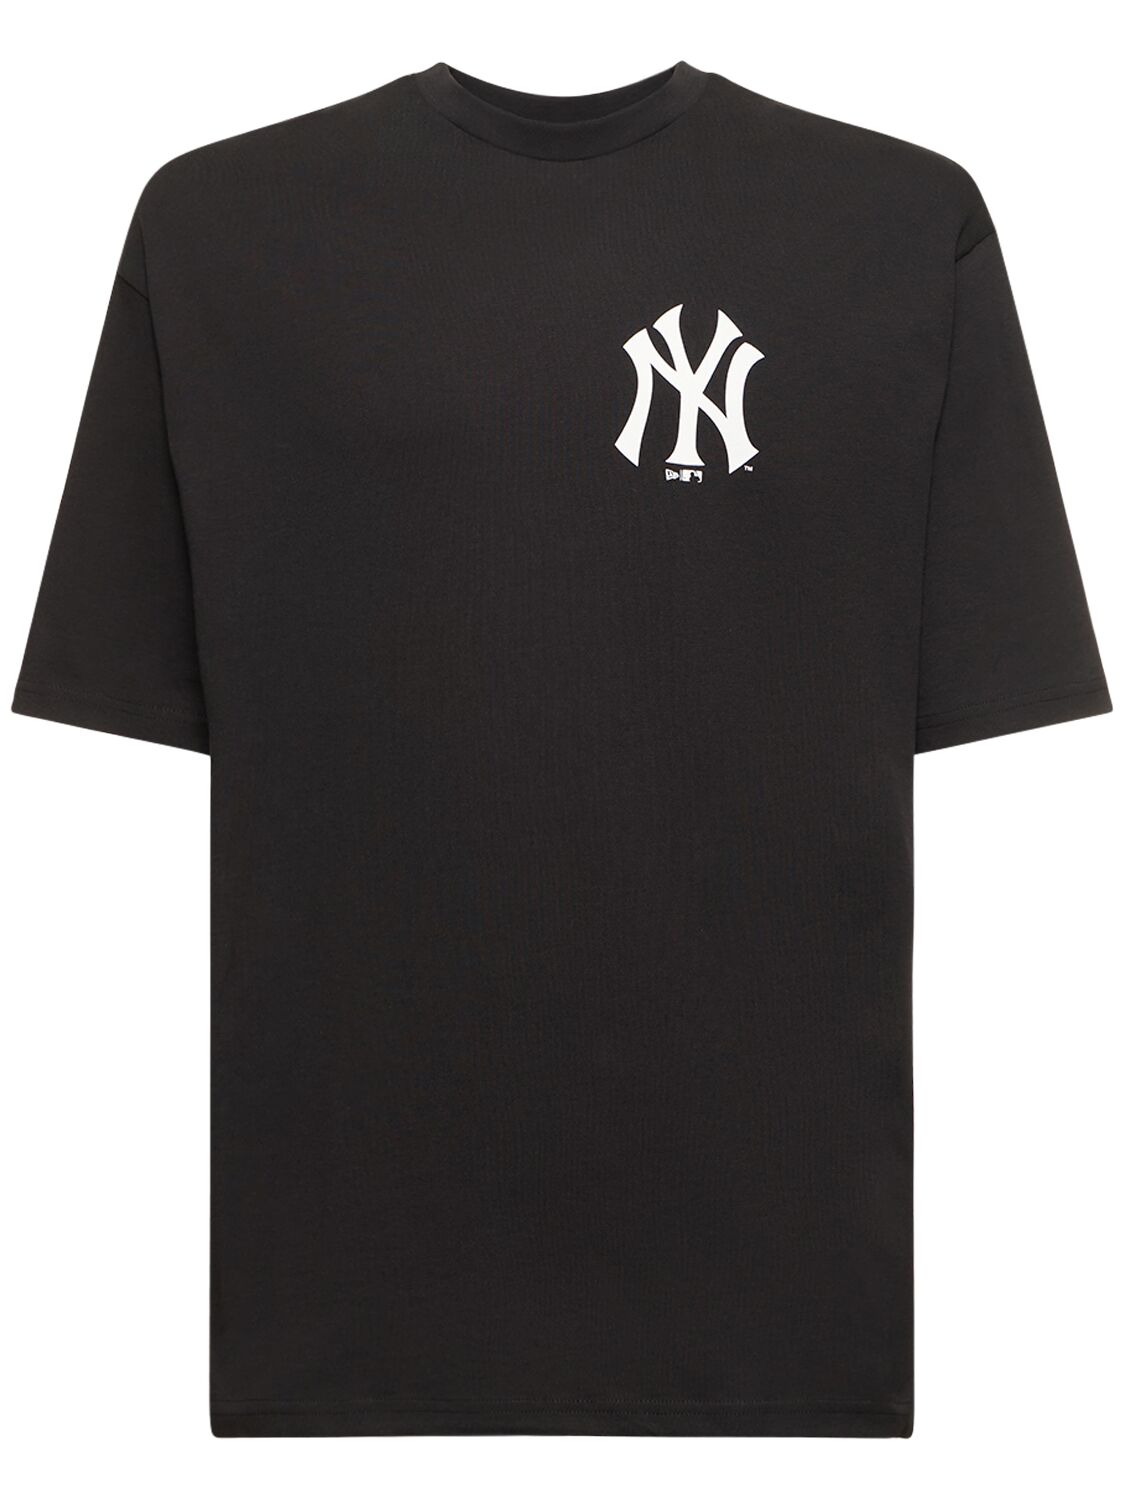 Ny Yankees Mlb Fish Graphic T-shirt – MEN > CLOTHING > T-SHIRTS